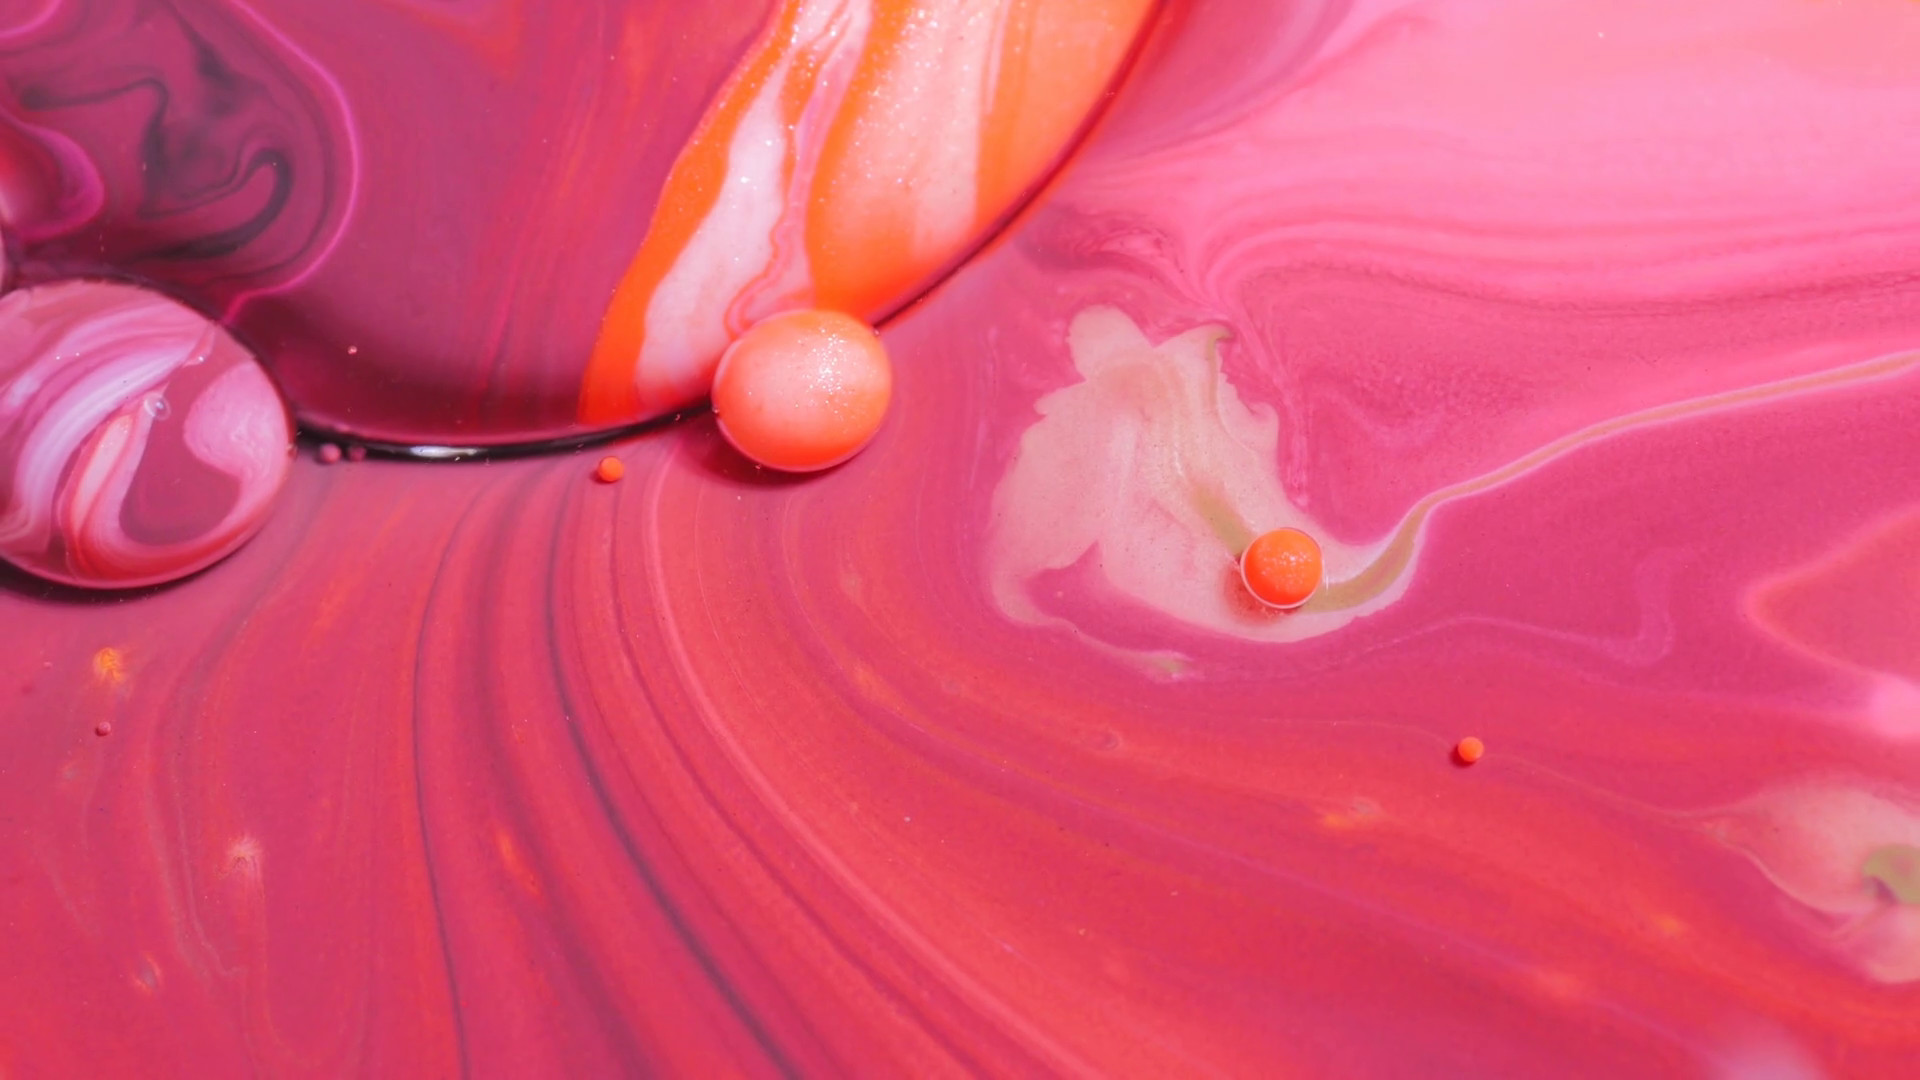 1920x1080 Multicolored Background Art Design Vibrant Wallpaper Macro Bubble Bursting  Liquid Paint 4K Chemical Reaction Artistic Concept Universe Of Color  Concept ...